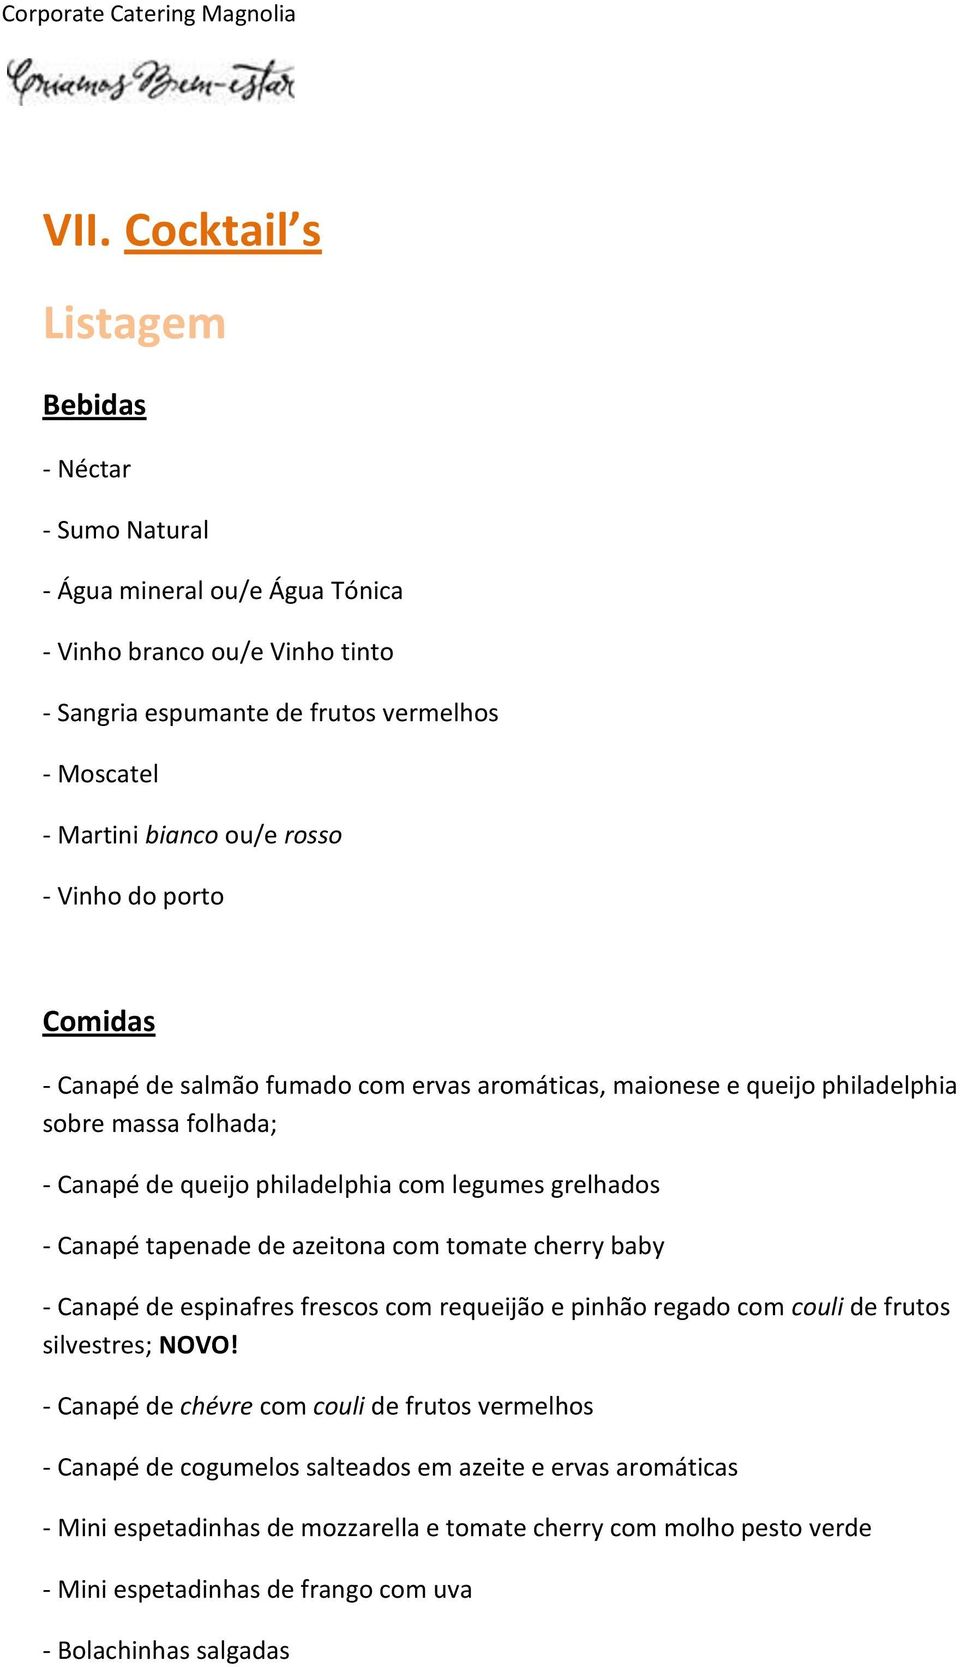 tapenade de azeitona com tomate cherry baby - Canapé de espinafres frescos com requeijão e pinhão regado com couli de frutos silvestres; NOVO!